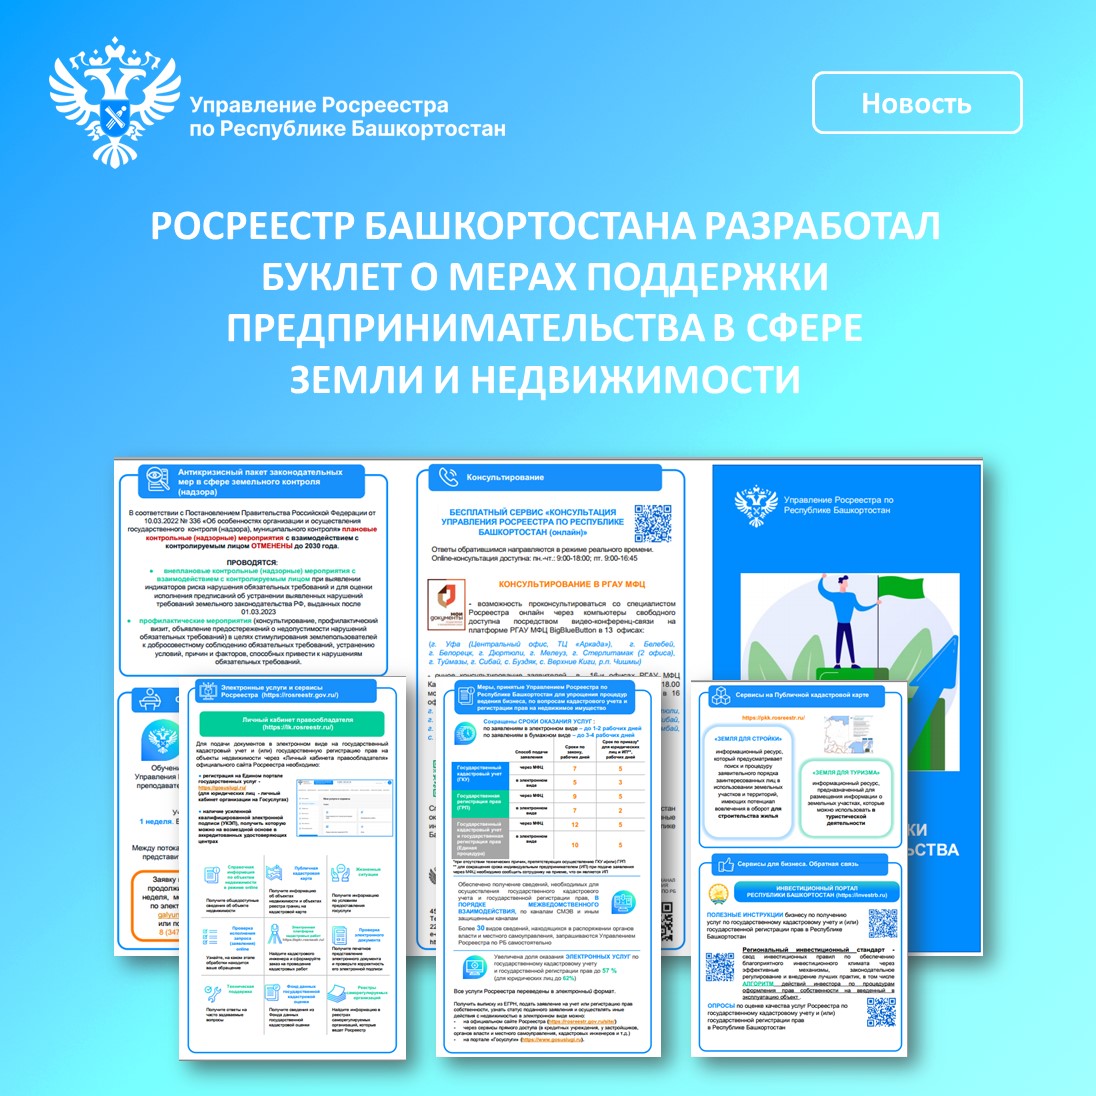 Росреестр Башкортостана разработал буклет о мерах поддержки предпринимательства в сфере земли и недвижимости